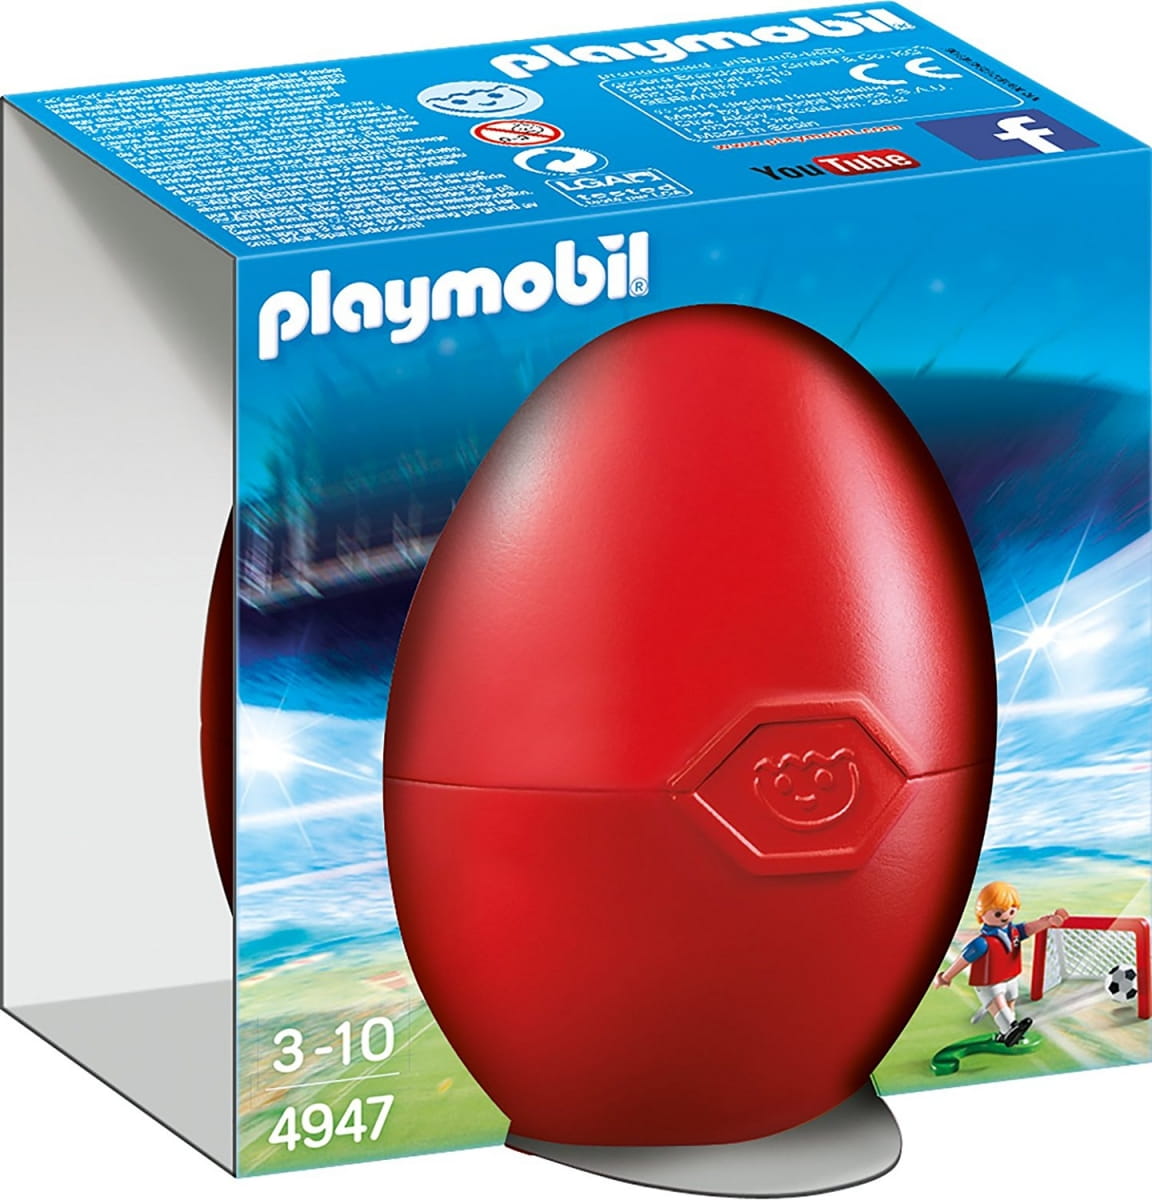    Playmobil     